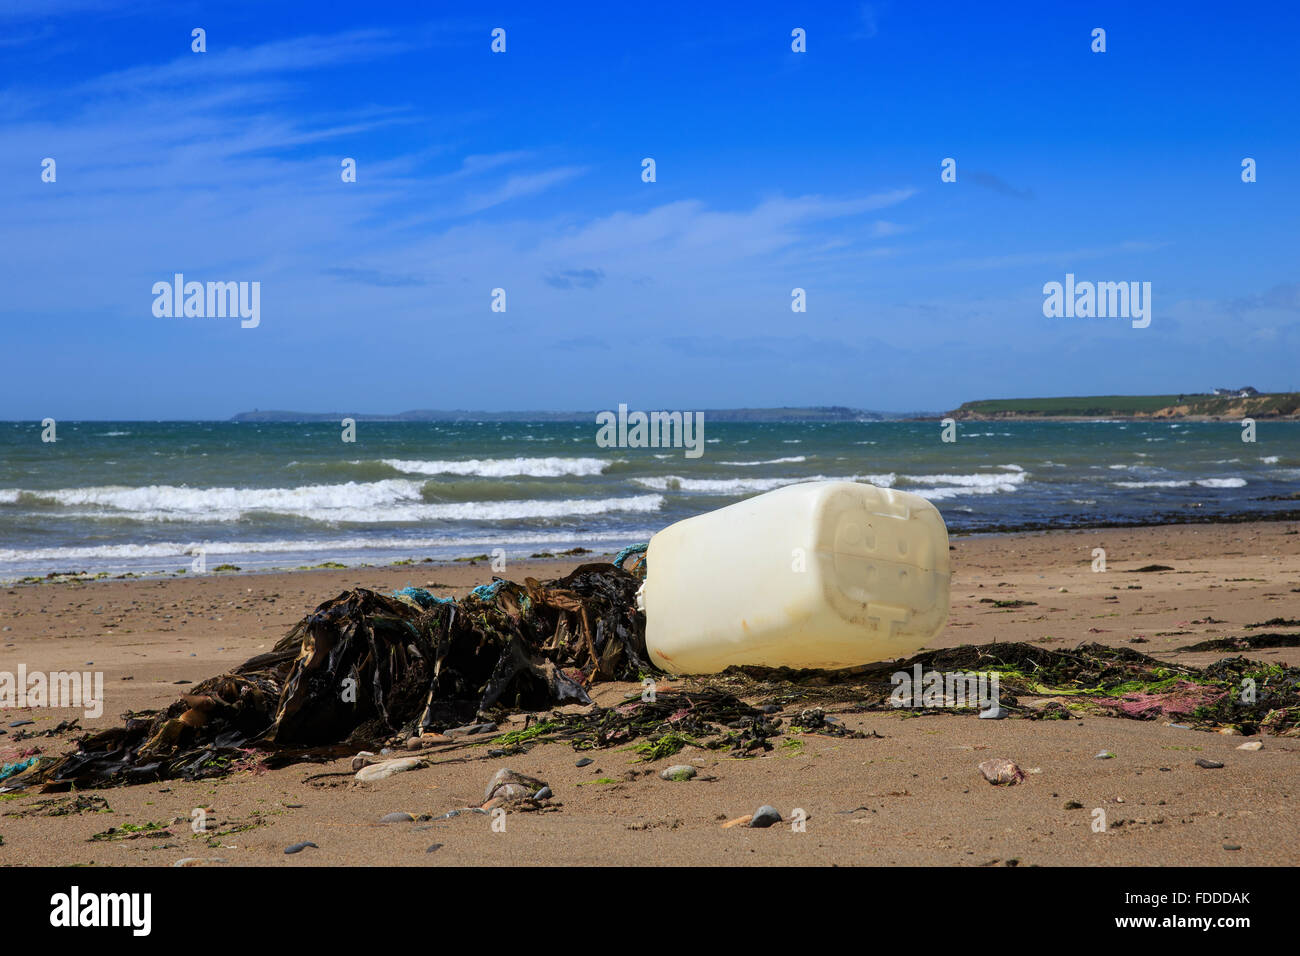 Corbeille ordures déchets plastiques plage côte rivage uk Banque D'Images